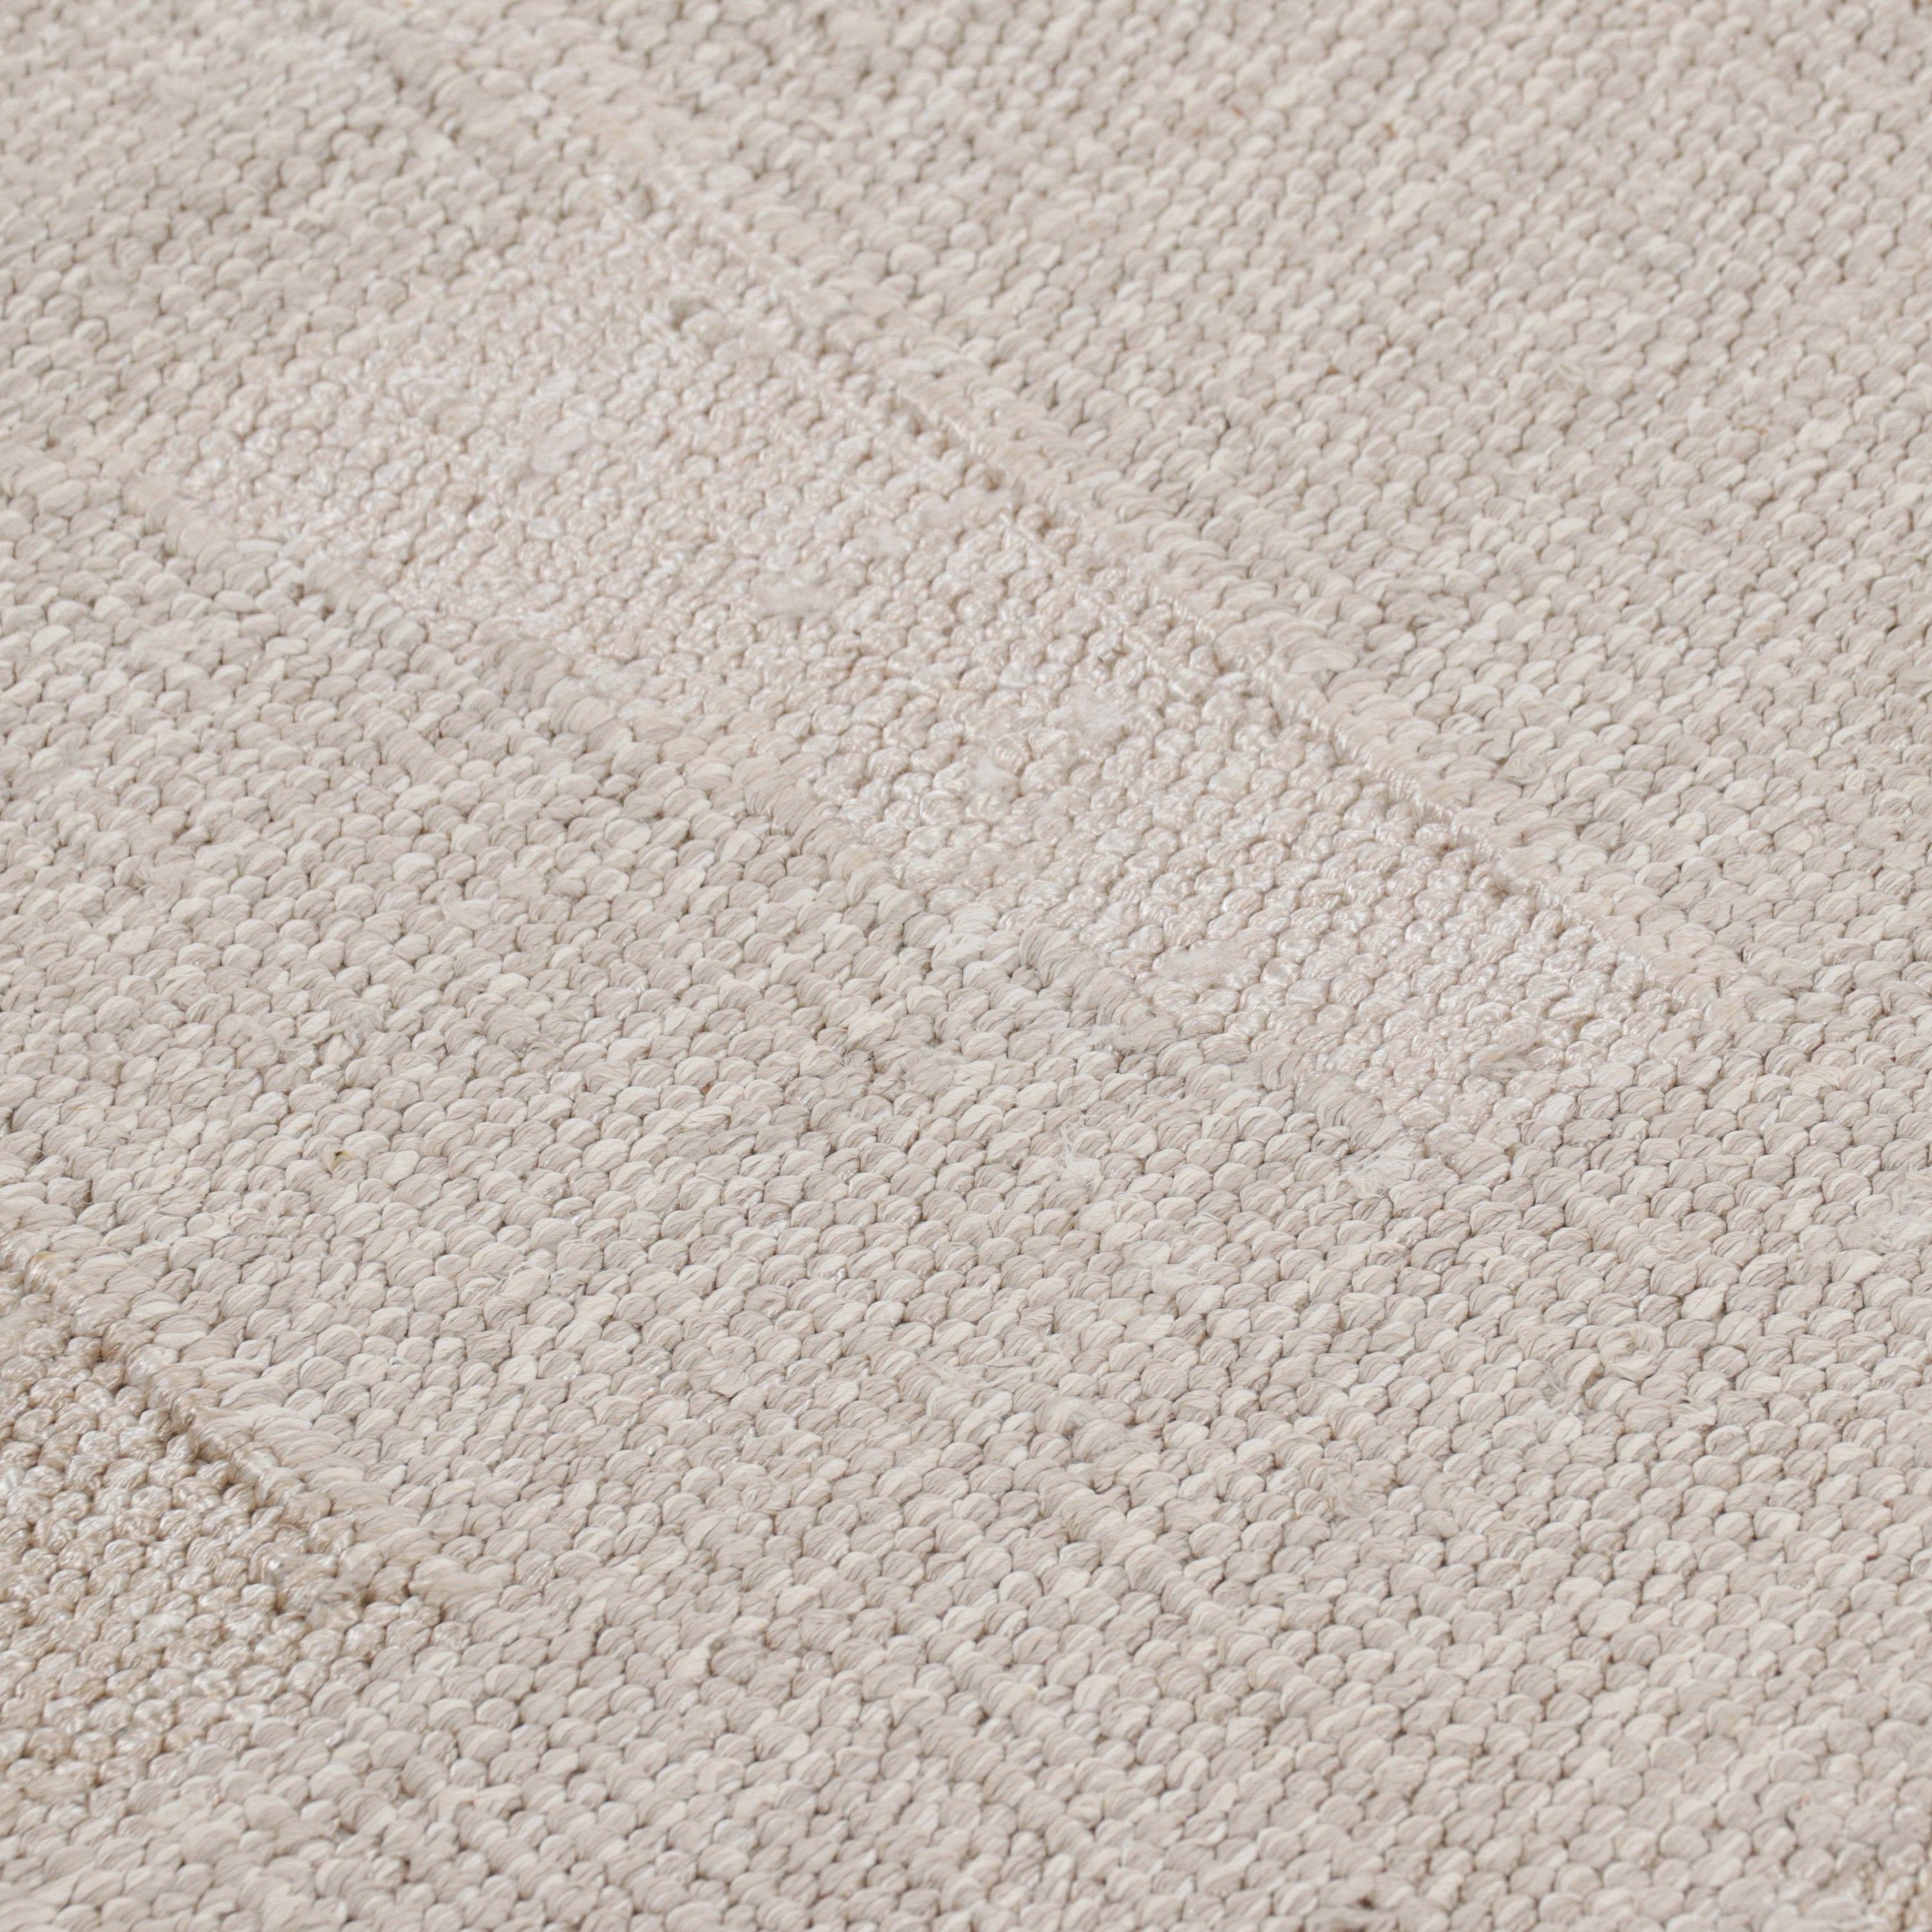 Grey Swediesh Inspired Flatweave Wool Rug - 7' x 9'1"